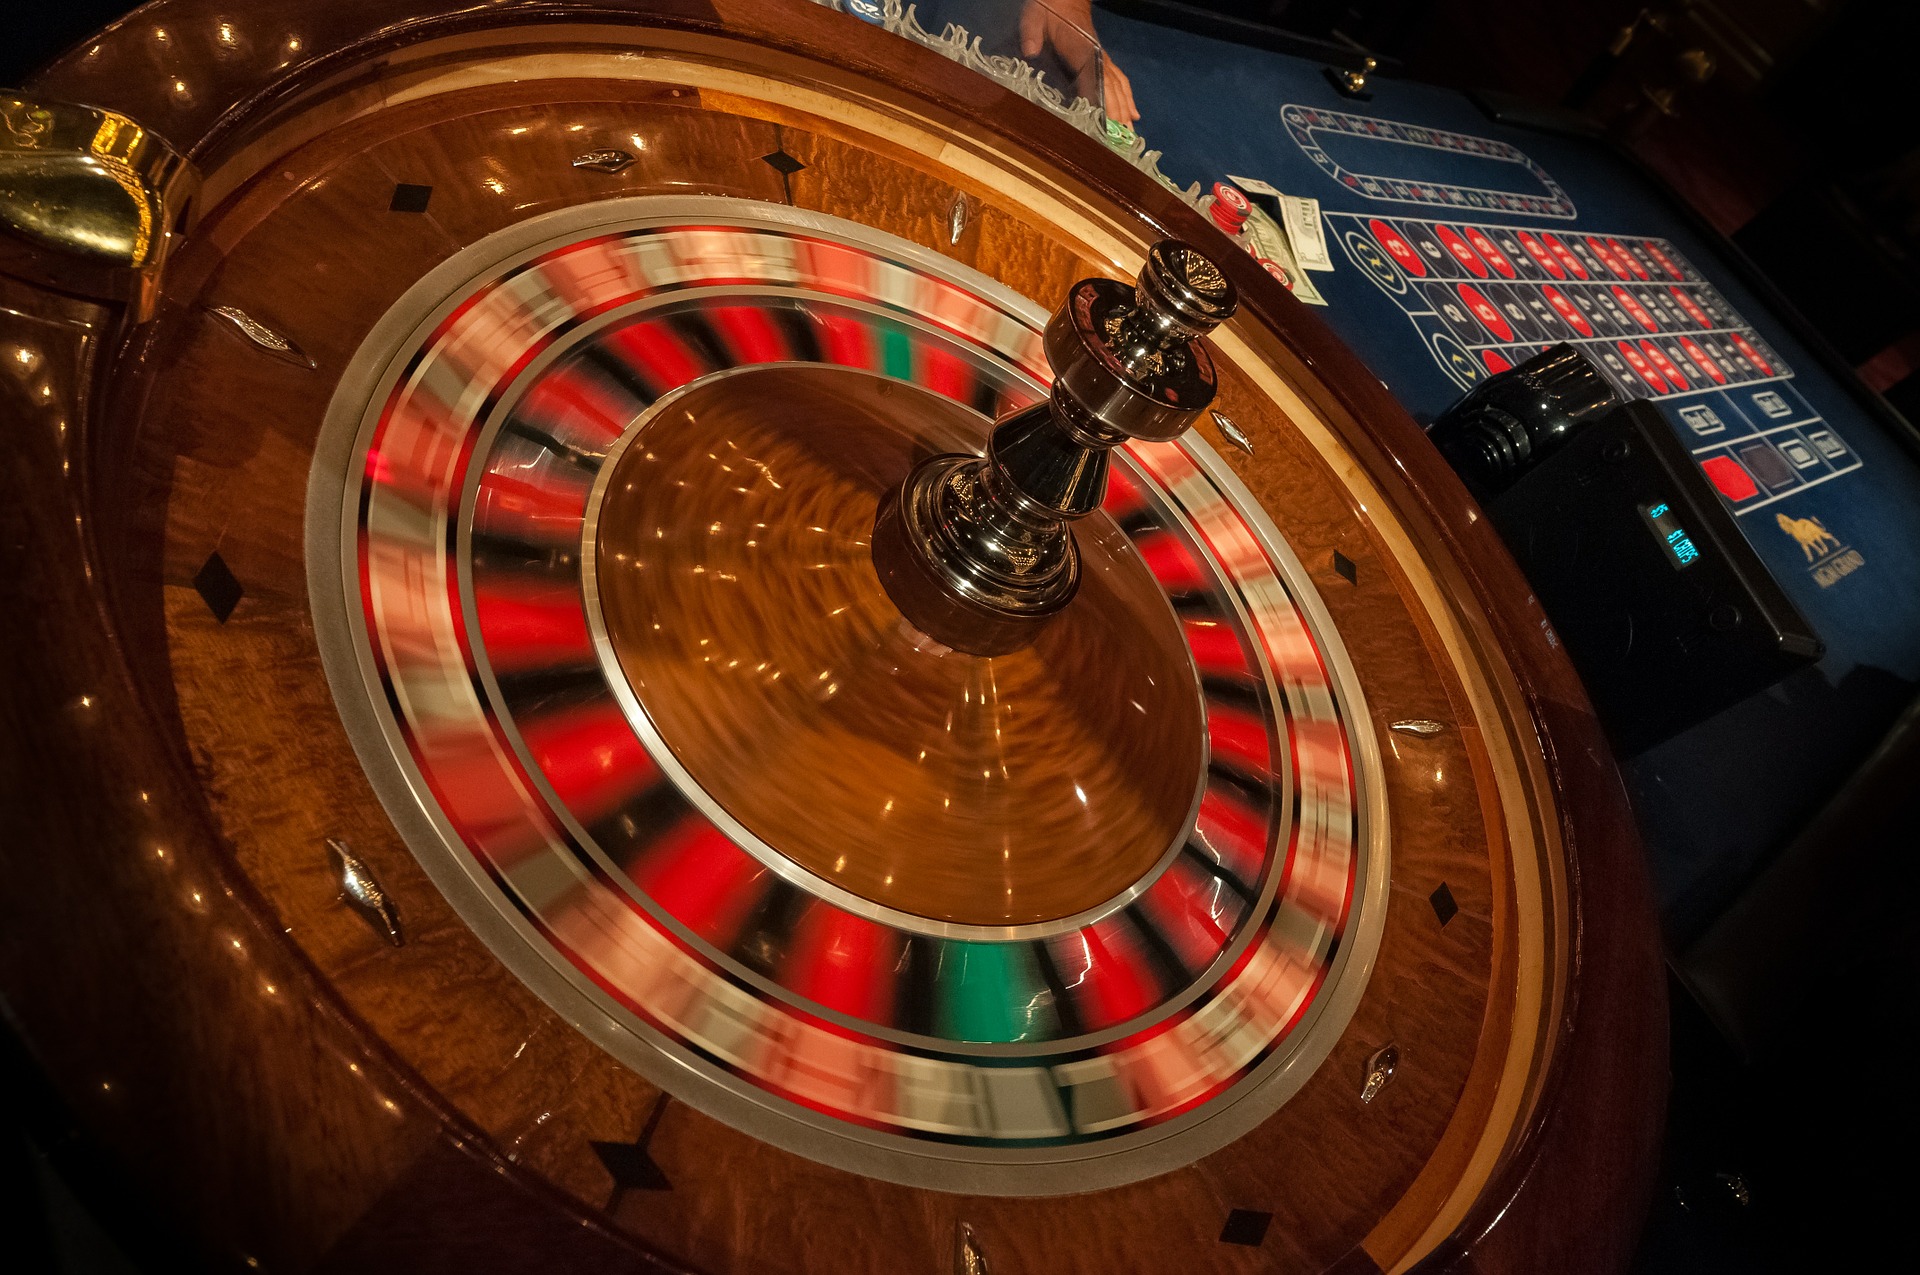 betoriginal casino